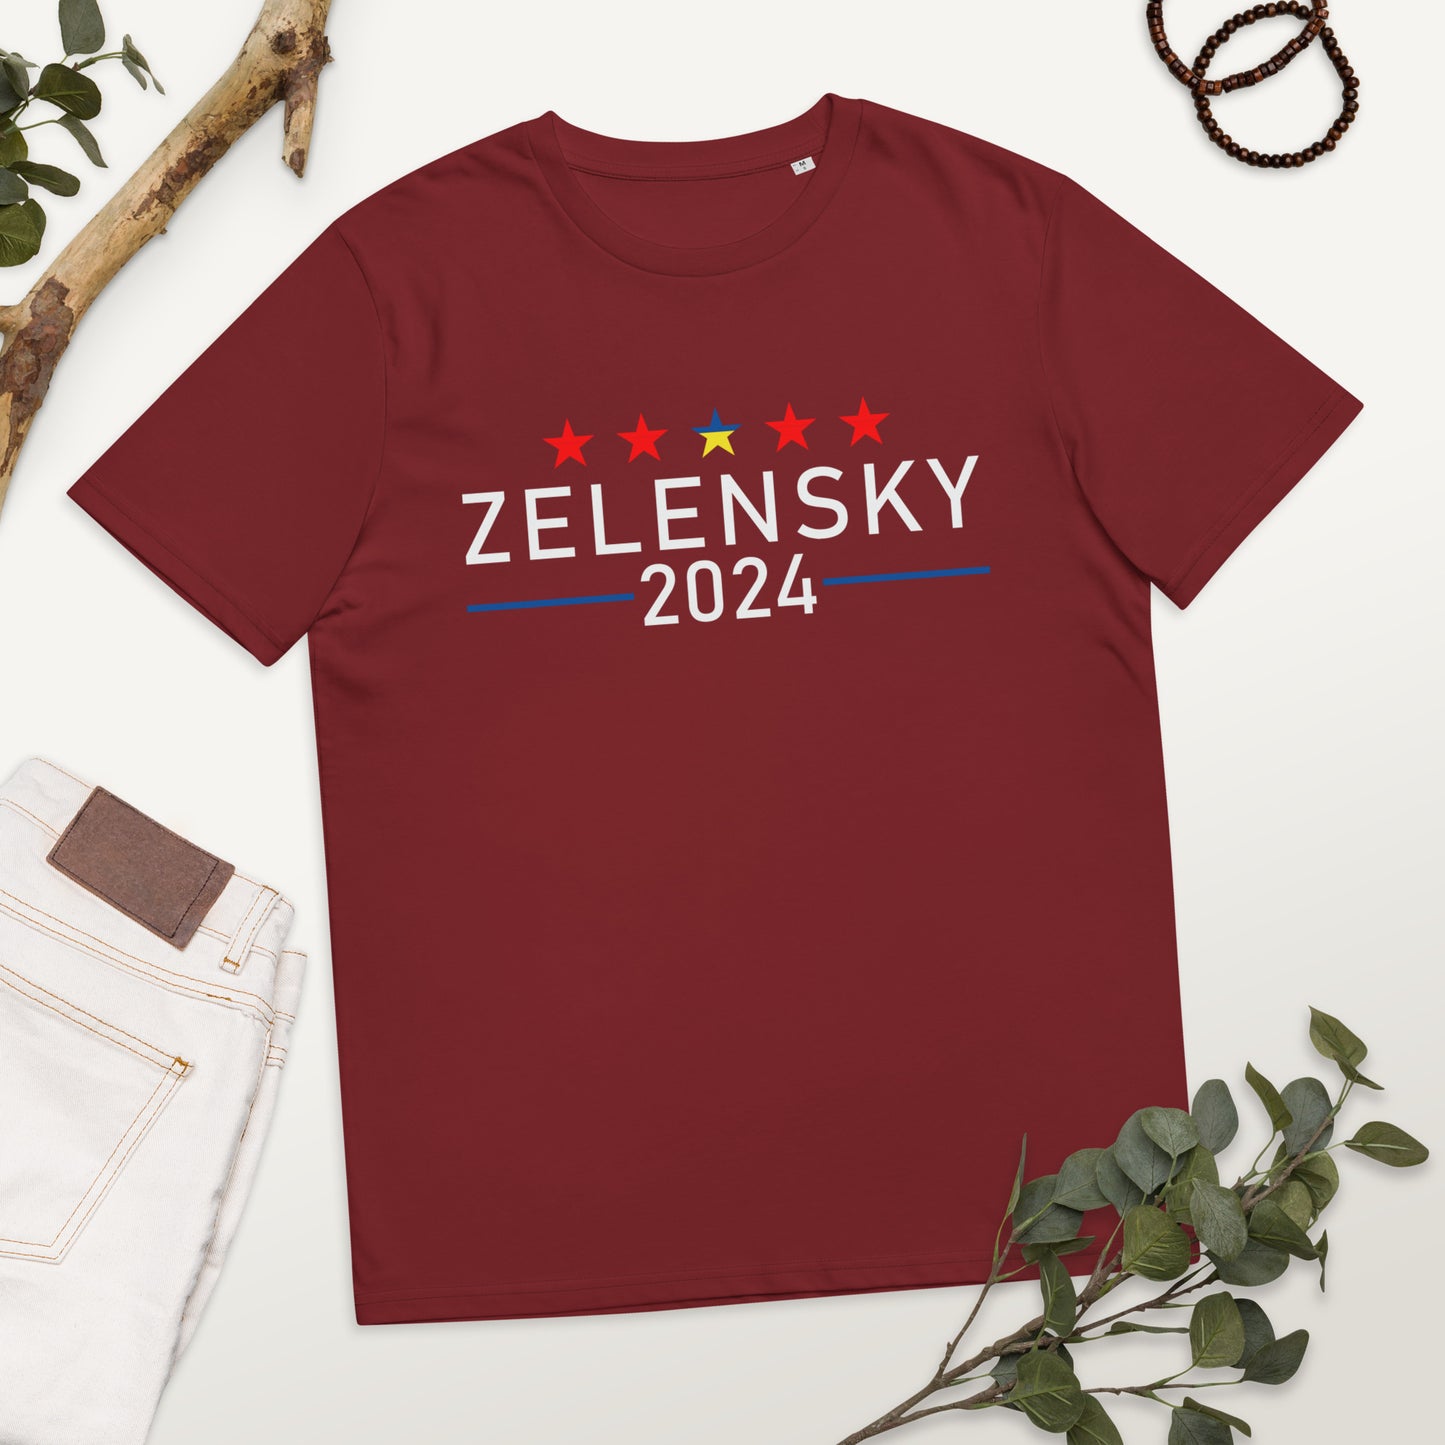 Unisex organic cotton t-shirt | Zelensky